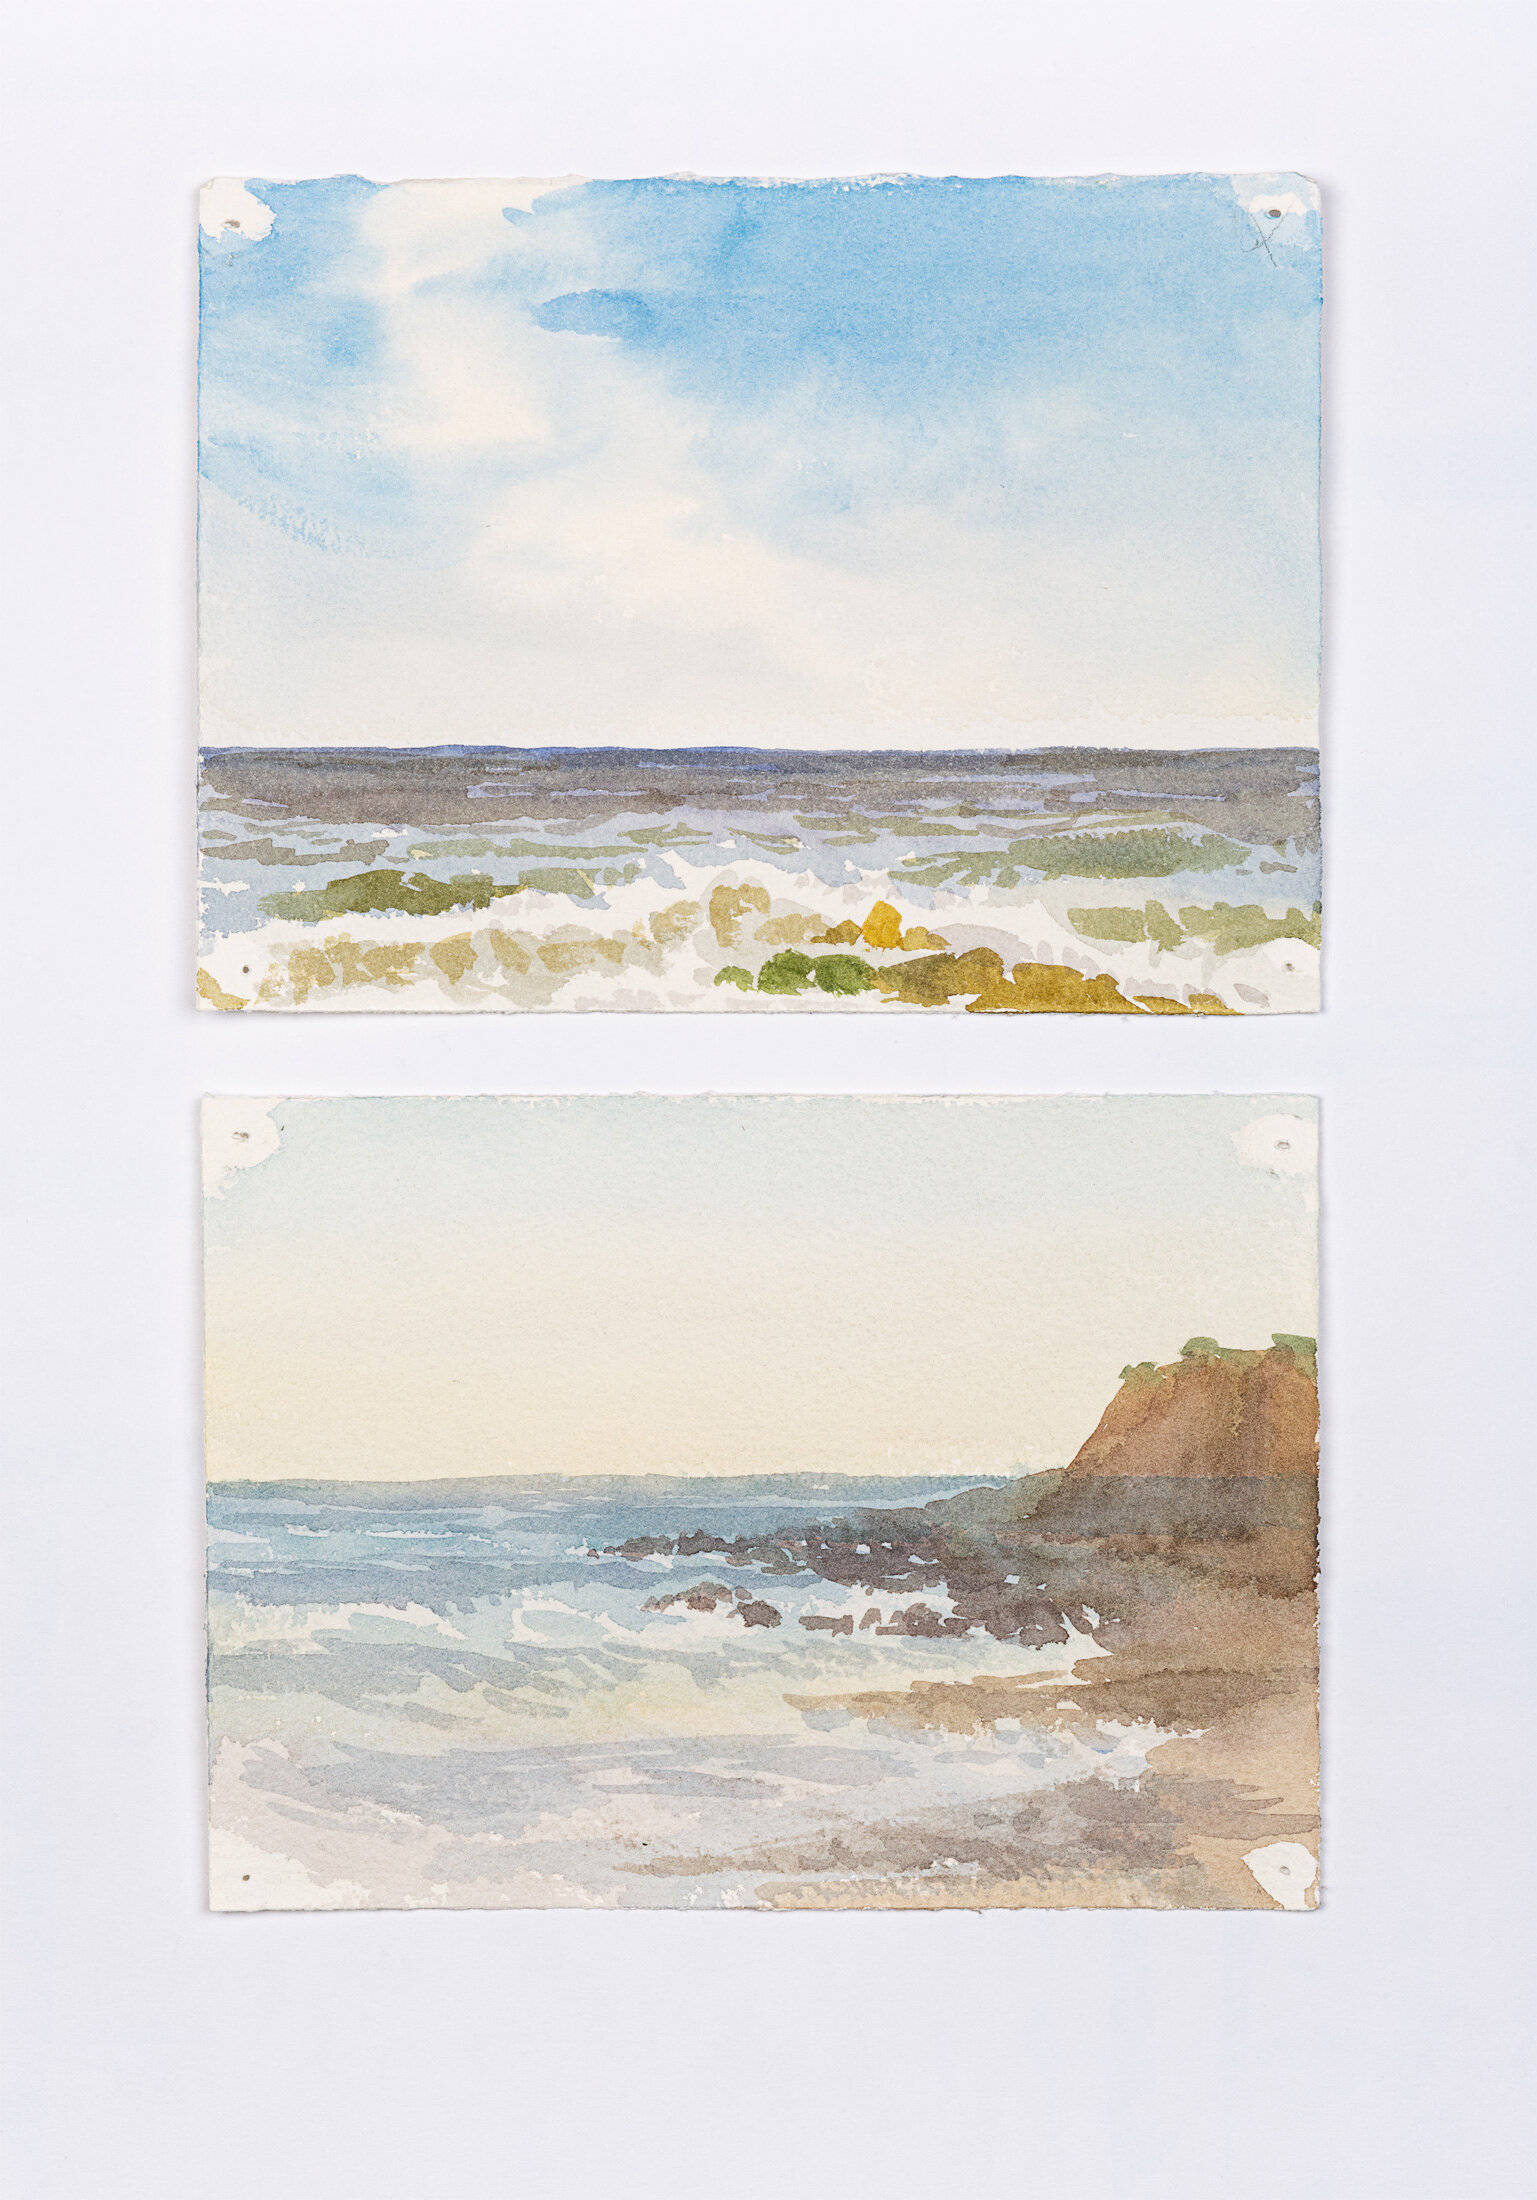 Sea Landscape Studies, 2016 - watercolor on paper 